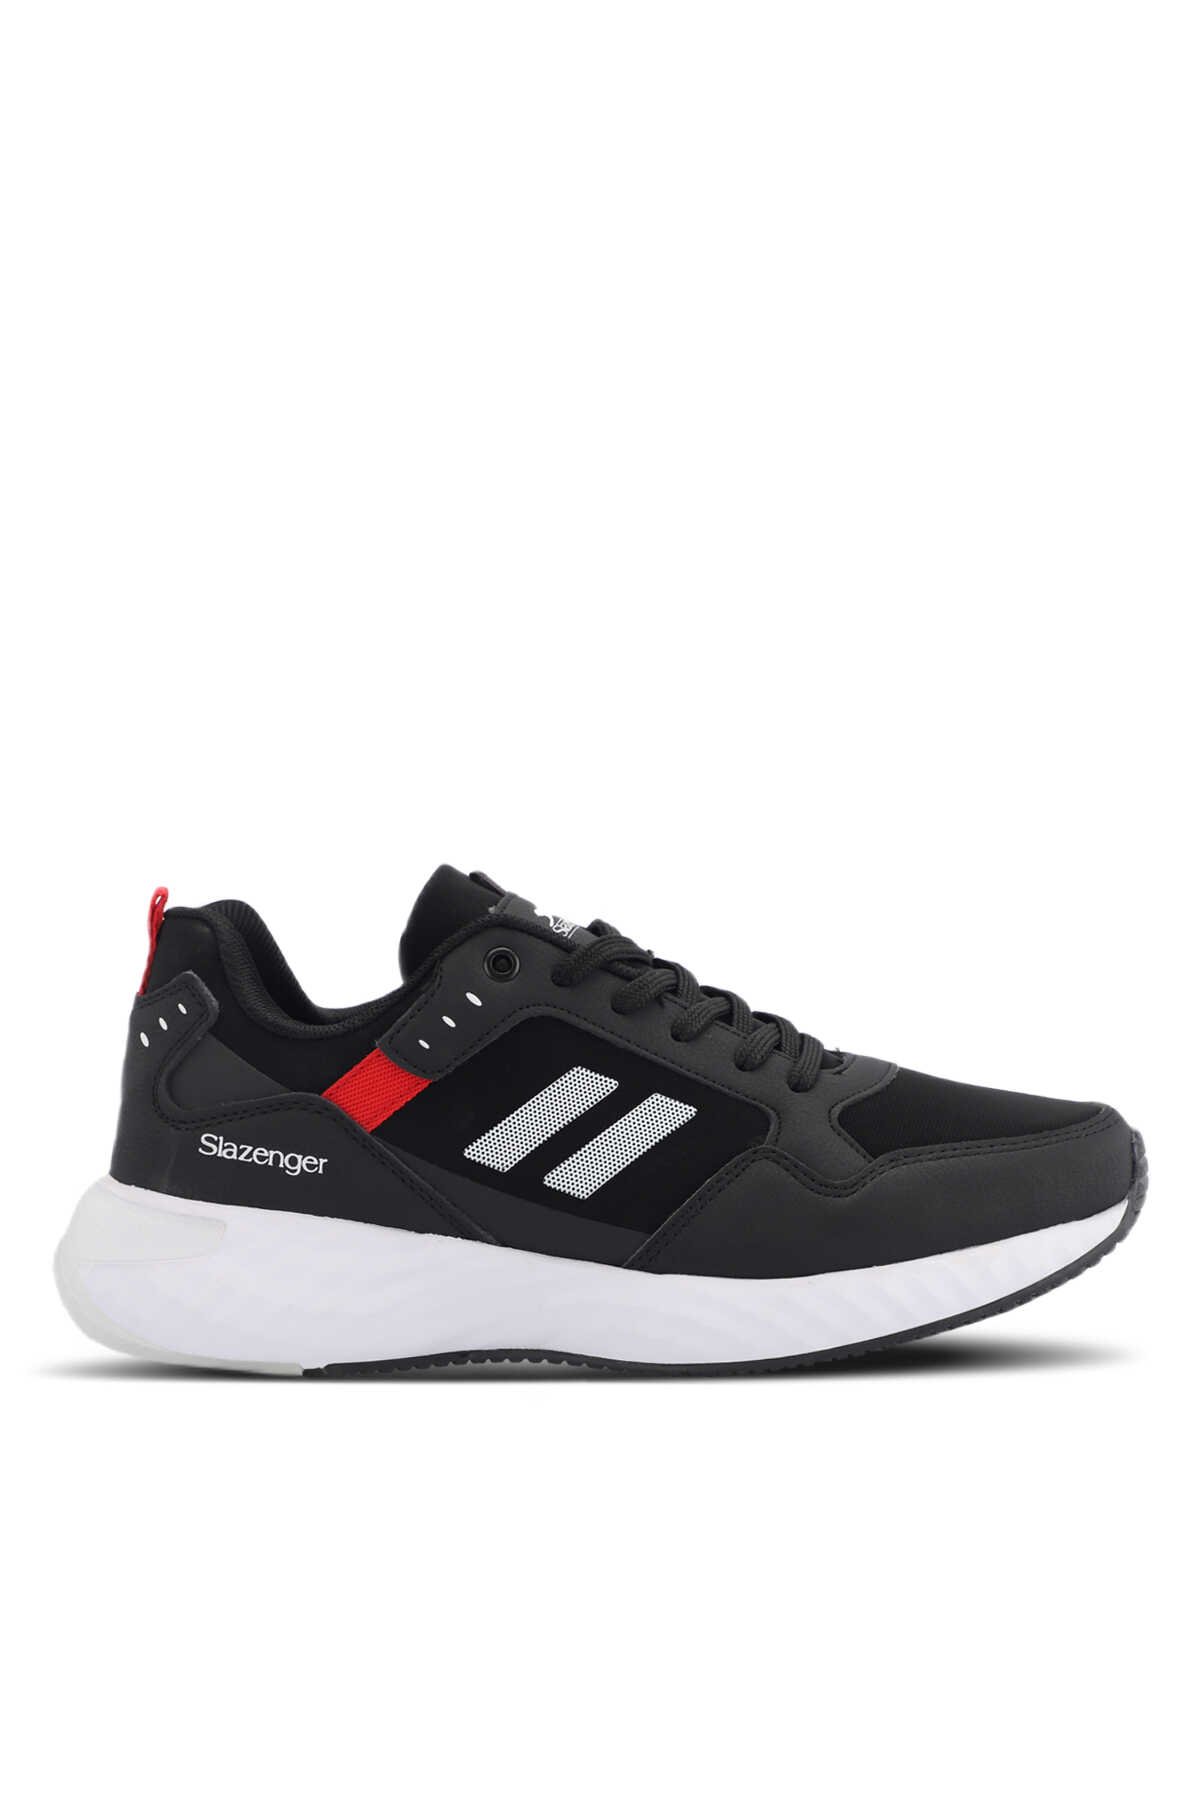 Slazenger - ZEPLIN Sneaker Erkek Ayakkabı Siyah / Beyaz